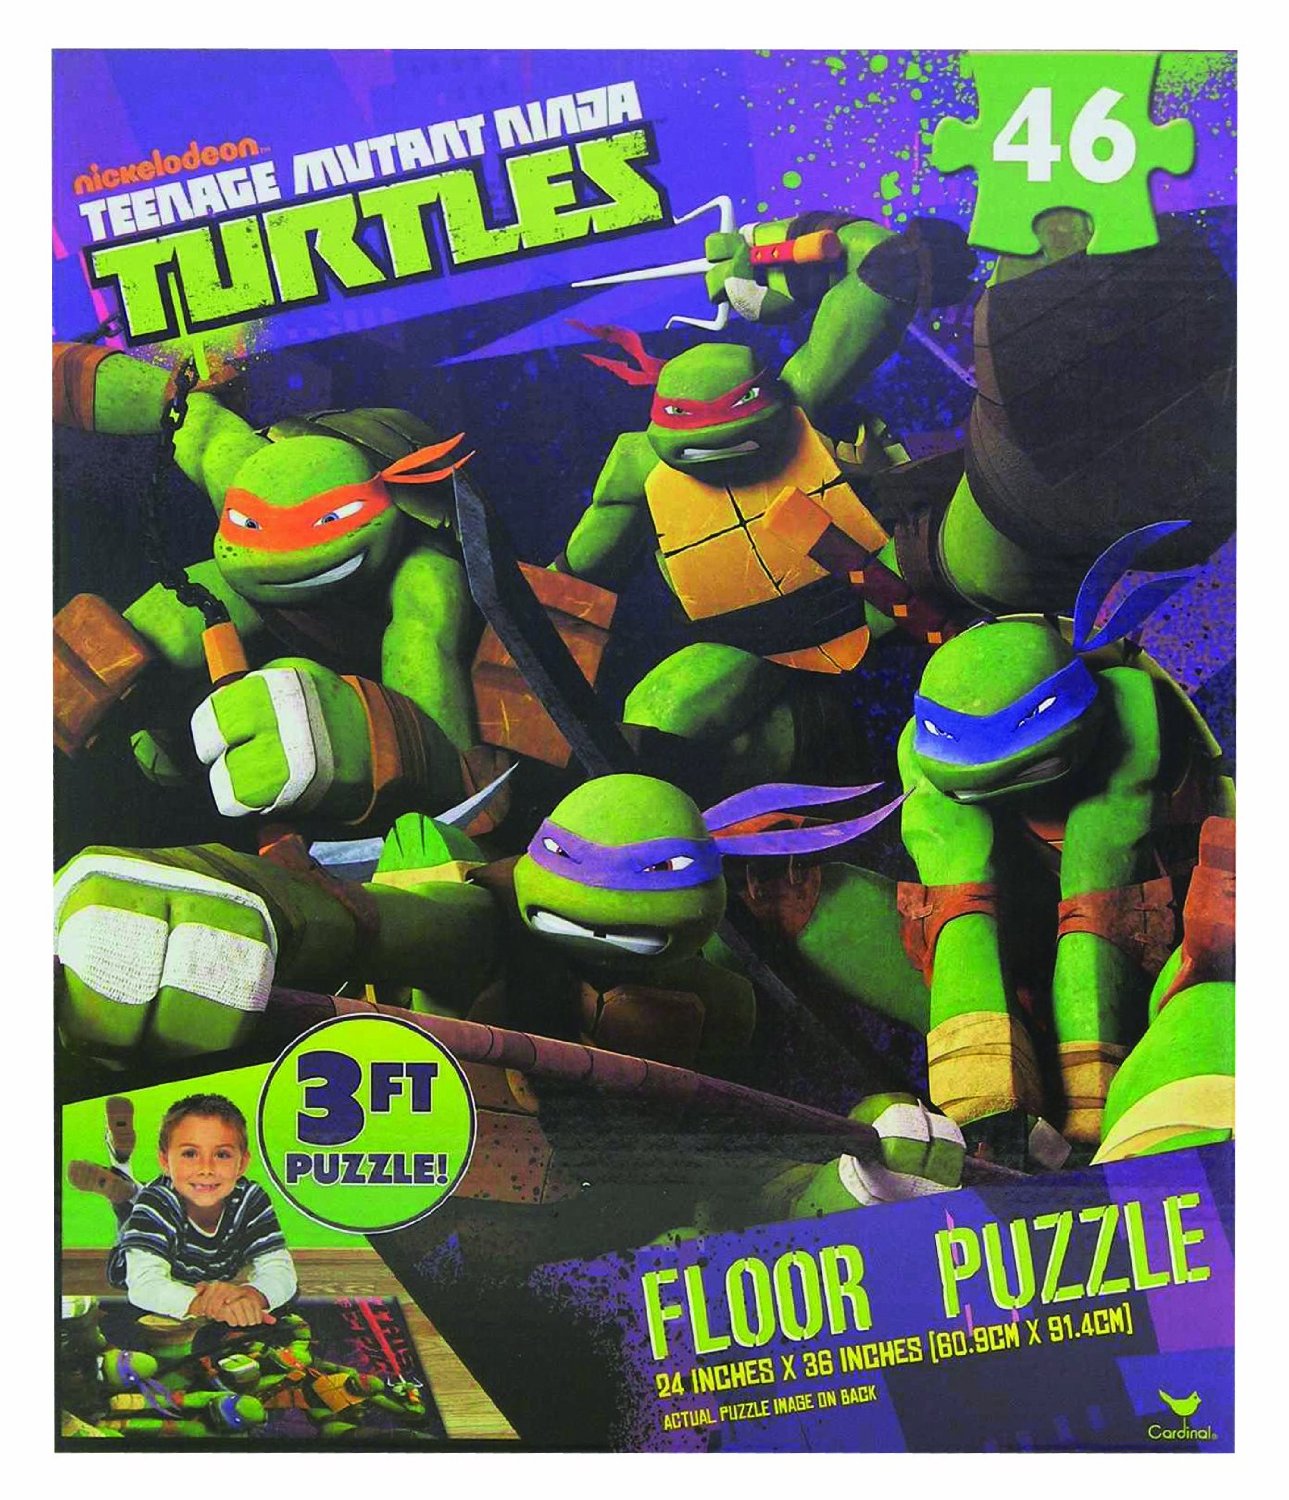 Teenage Mutant Ninja Turtles, 3 Foot Floor Puzzle Only $8.50 – Reg $12.99